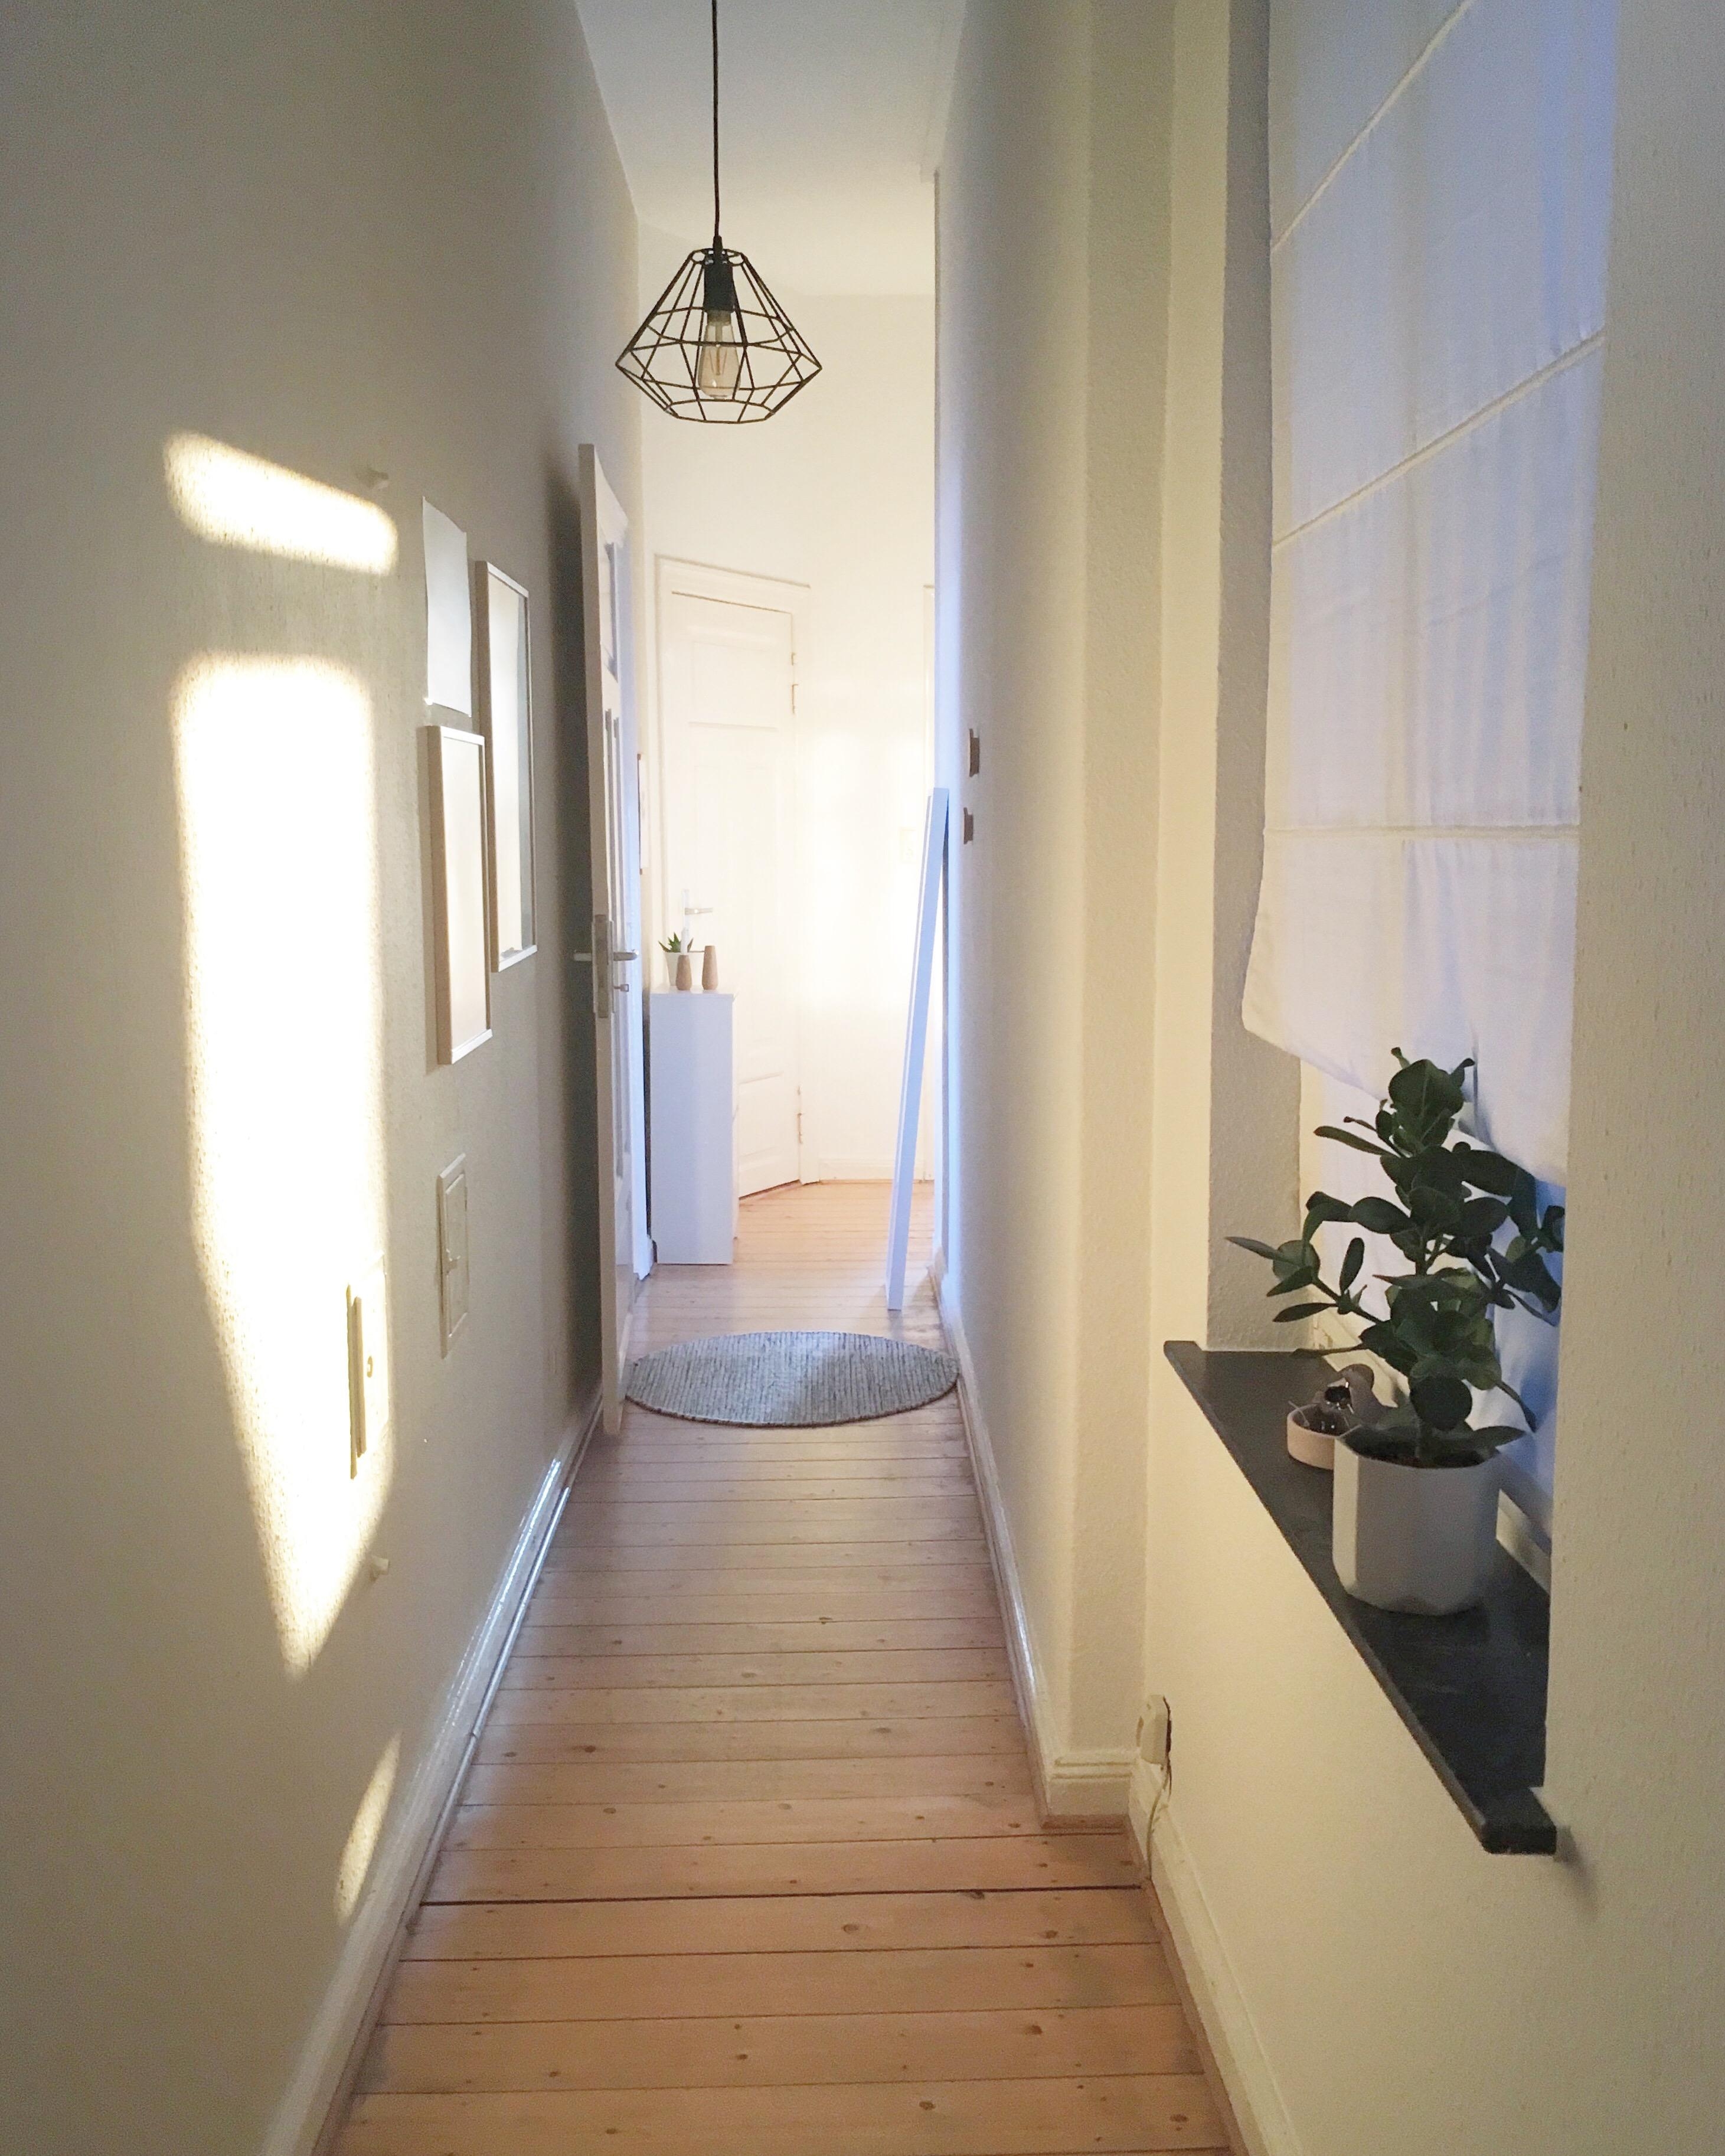 Einblicke in unseren Flur 
#hallway #flur #altbau